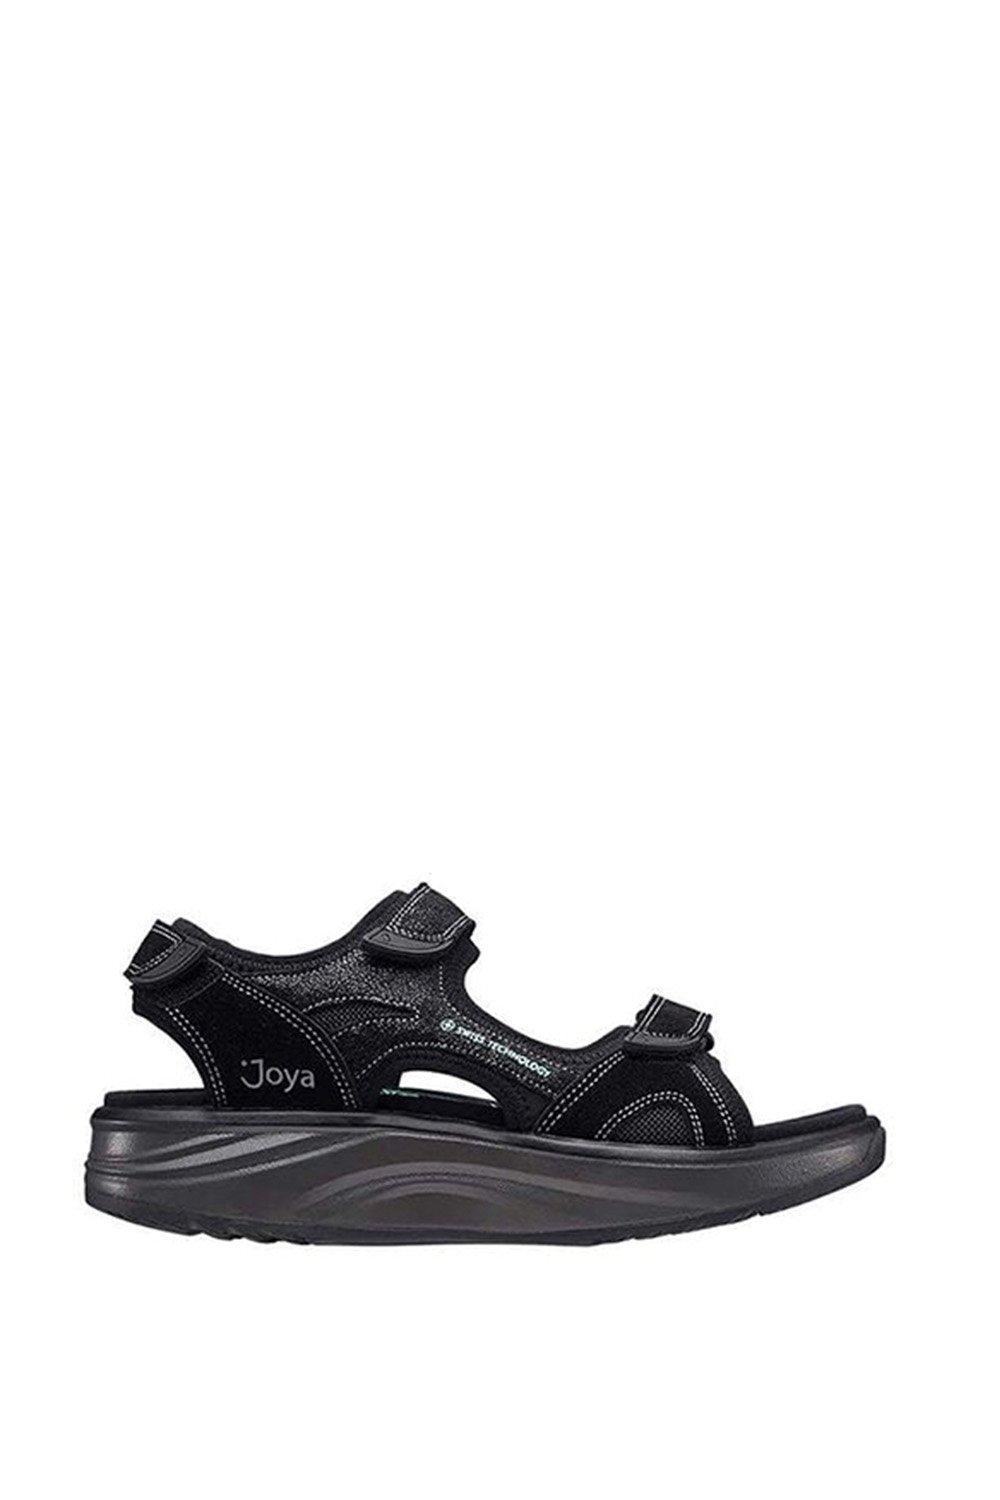 Женские сандалии широкого кроя Komodo в спортивном стиле с тройной застежкой-липучкой Joya, черный